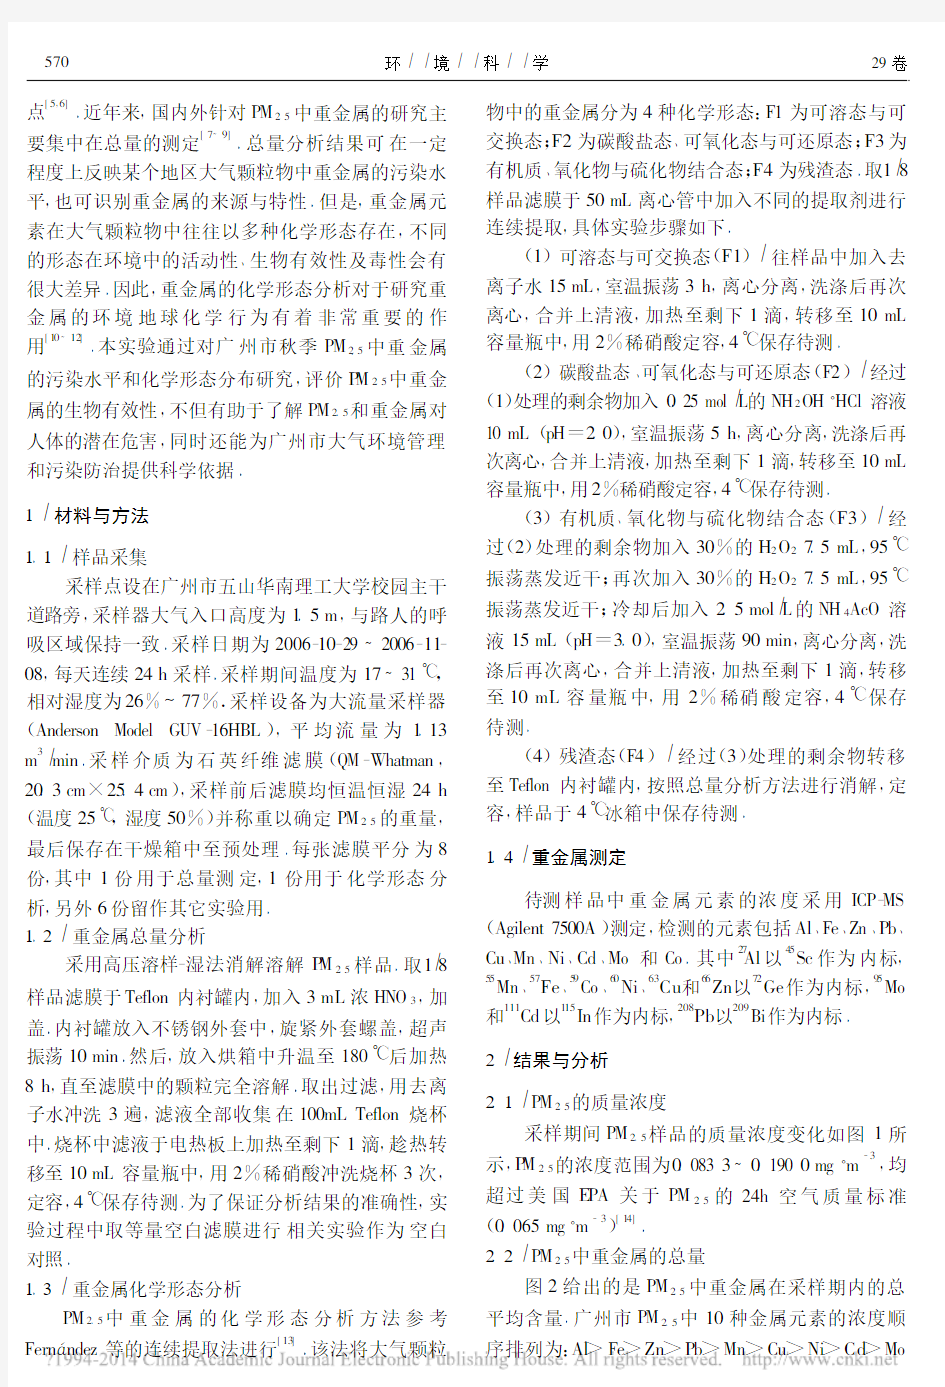 广州市秋季PM_2_5_中重金属的污染水平与化学形态分析_冯茜丹